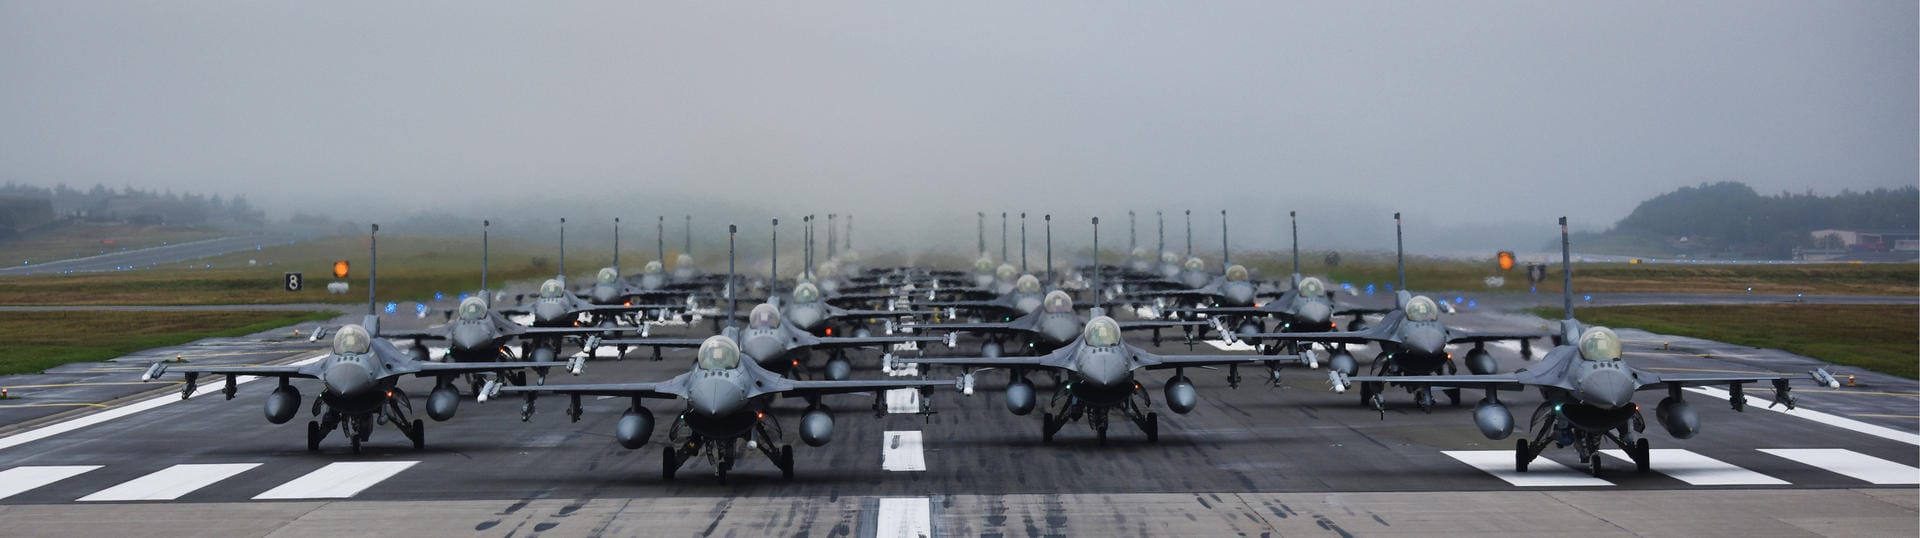 ... letzten US-amerikanischen F-16-Jets in Deutschland stationiert. Es umfasst eine F-16-Kampfjet-Staffel mit gut 20 Flugzeugen. Zur Air Base gehören...